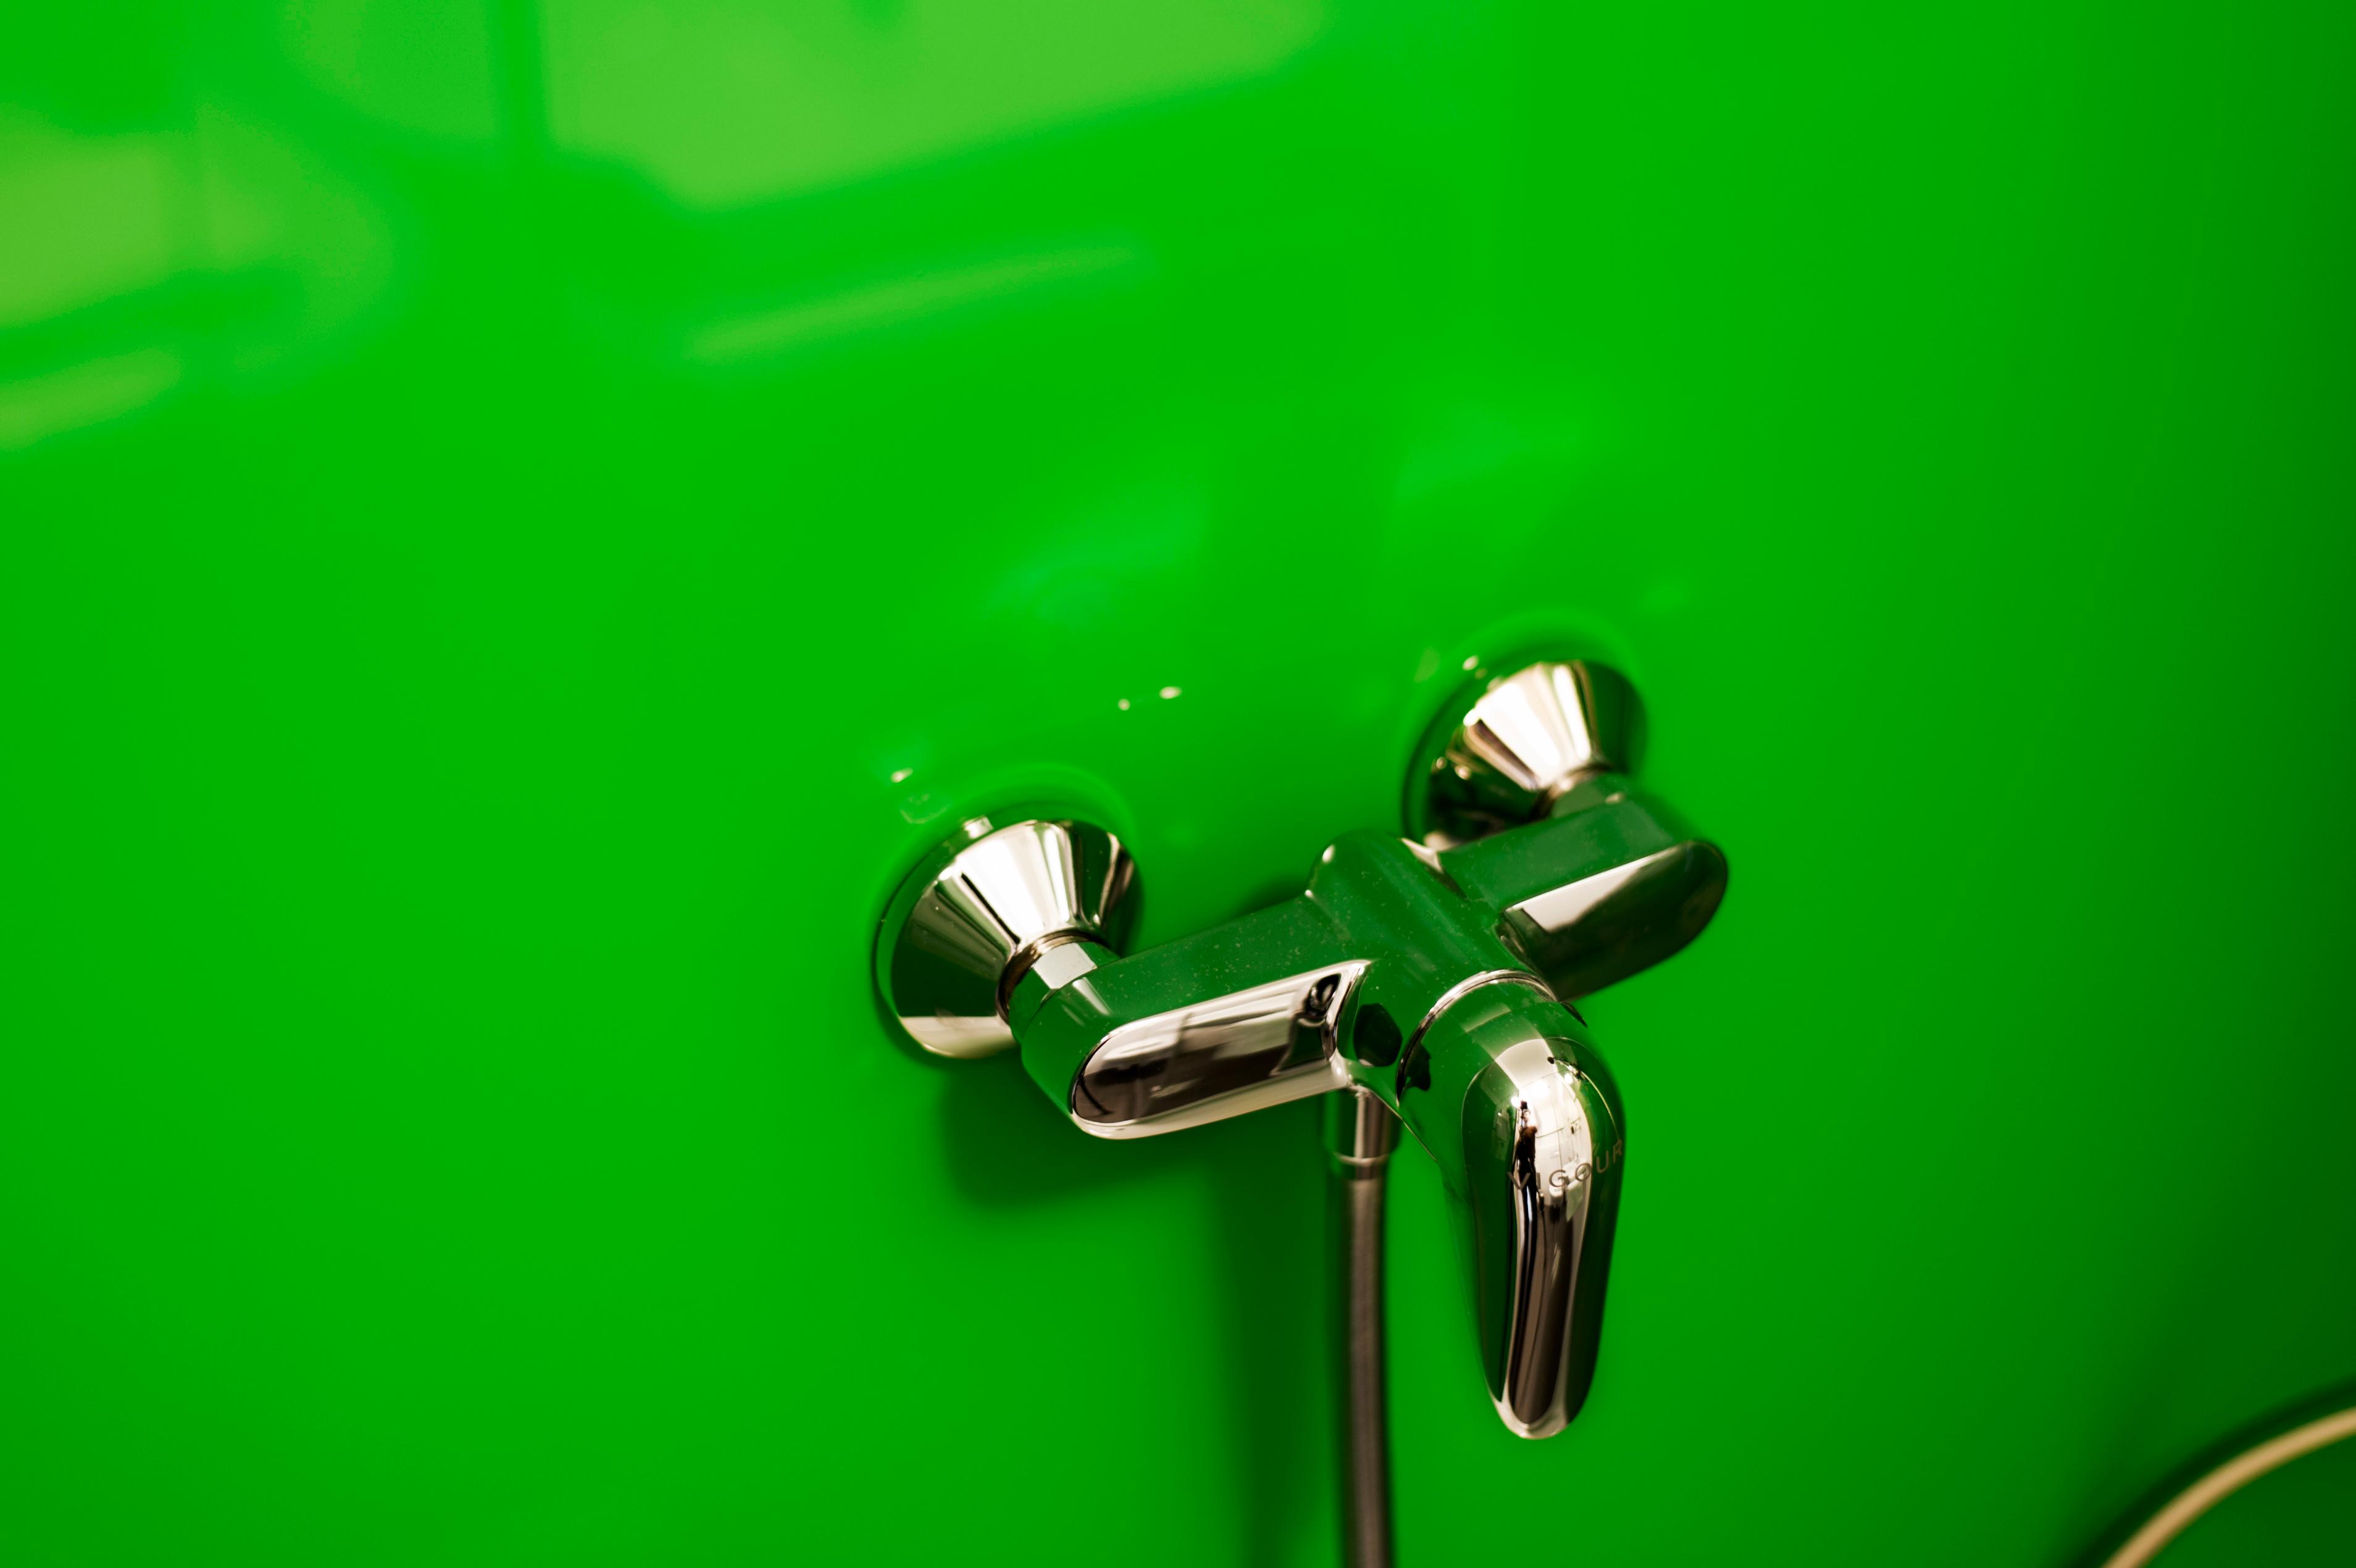 Glas Dusche rückseitig grün lackiert als Duschrückwand #badezimmer #laminat #duschrückwand ©Layerprint.de